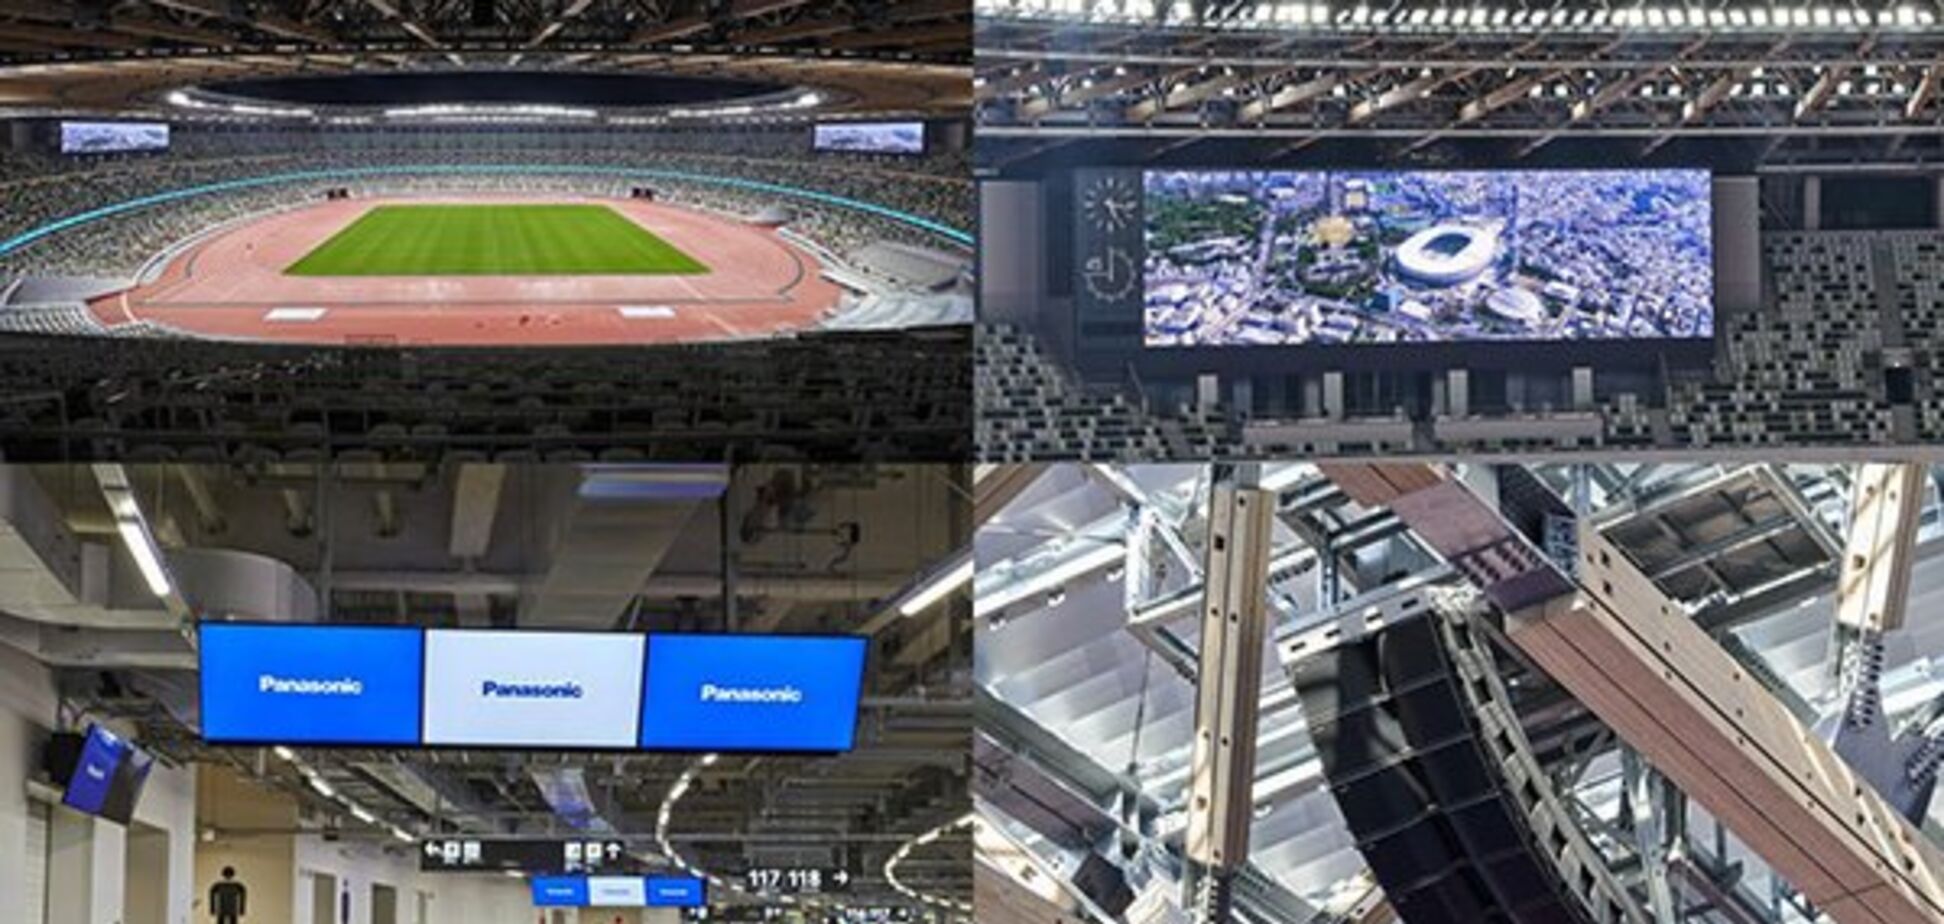 Panasonic оборудует Национальный стадион для Олимпийских игр-2020 в Токио